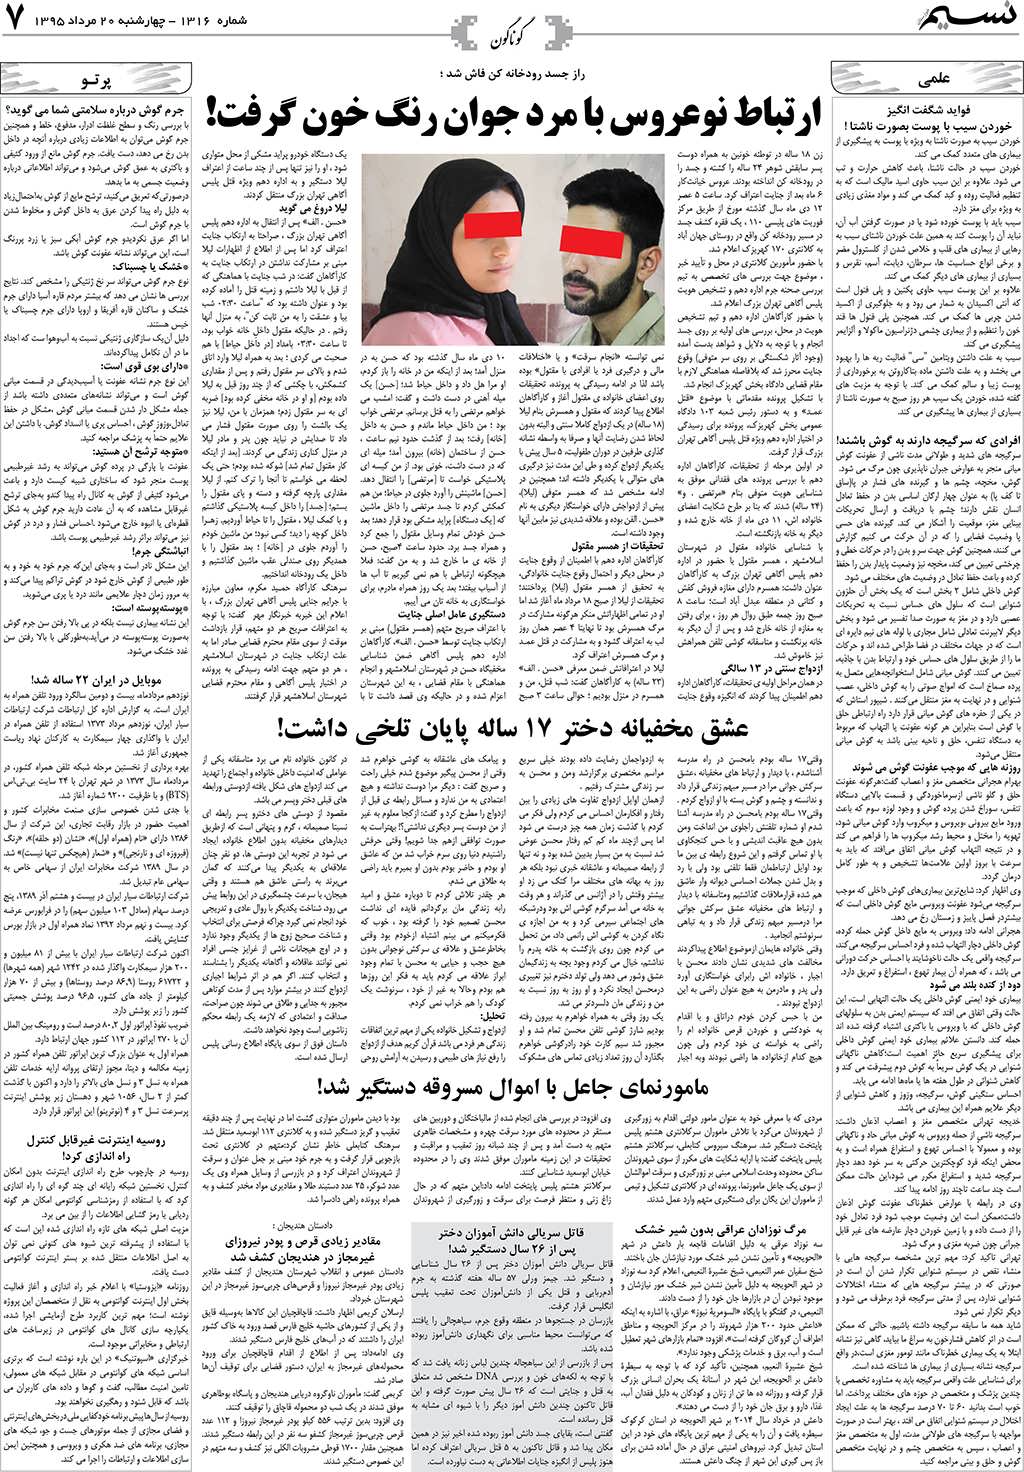 صفحه گوناگون روزنامه نسیم شماره 1316